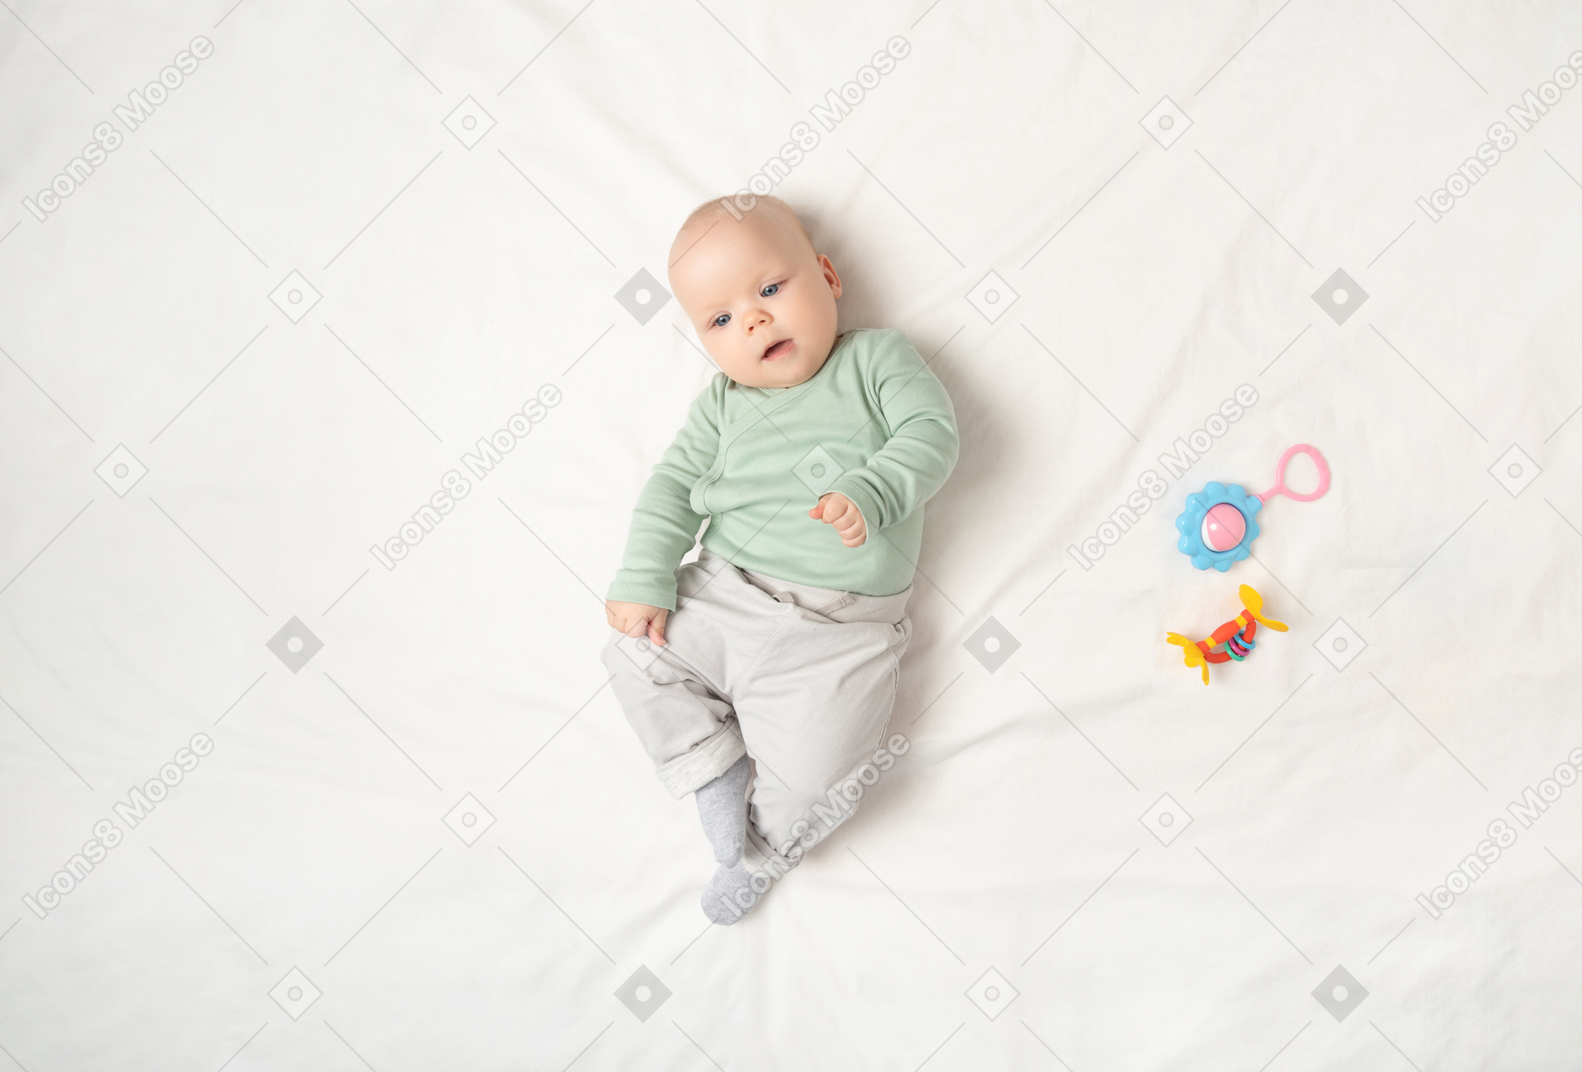 Baby girl lying on the back near children toys